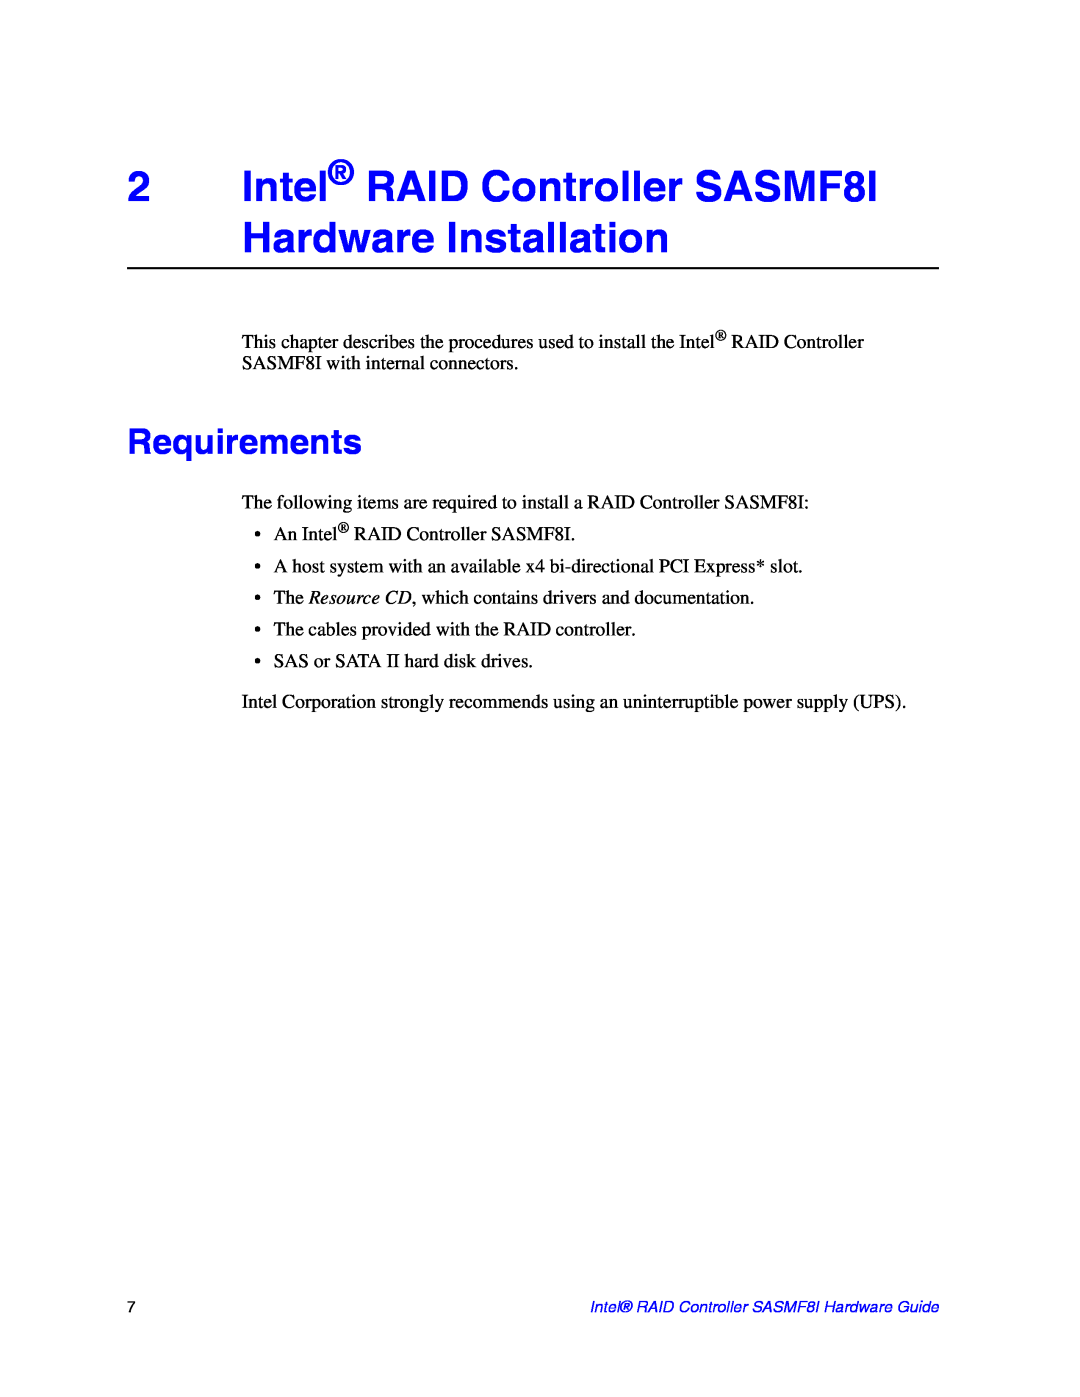 Intel SASMF8I manual Requirements 